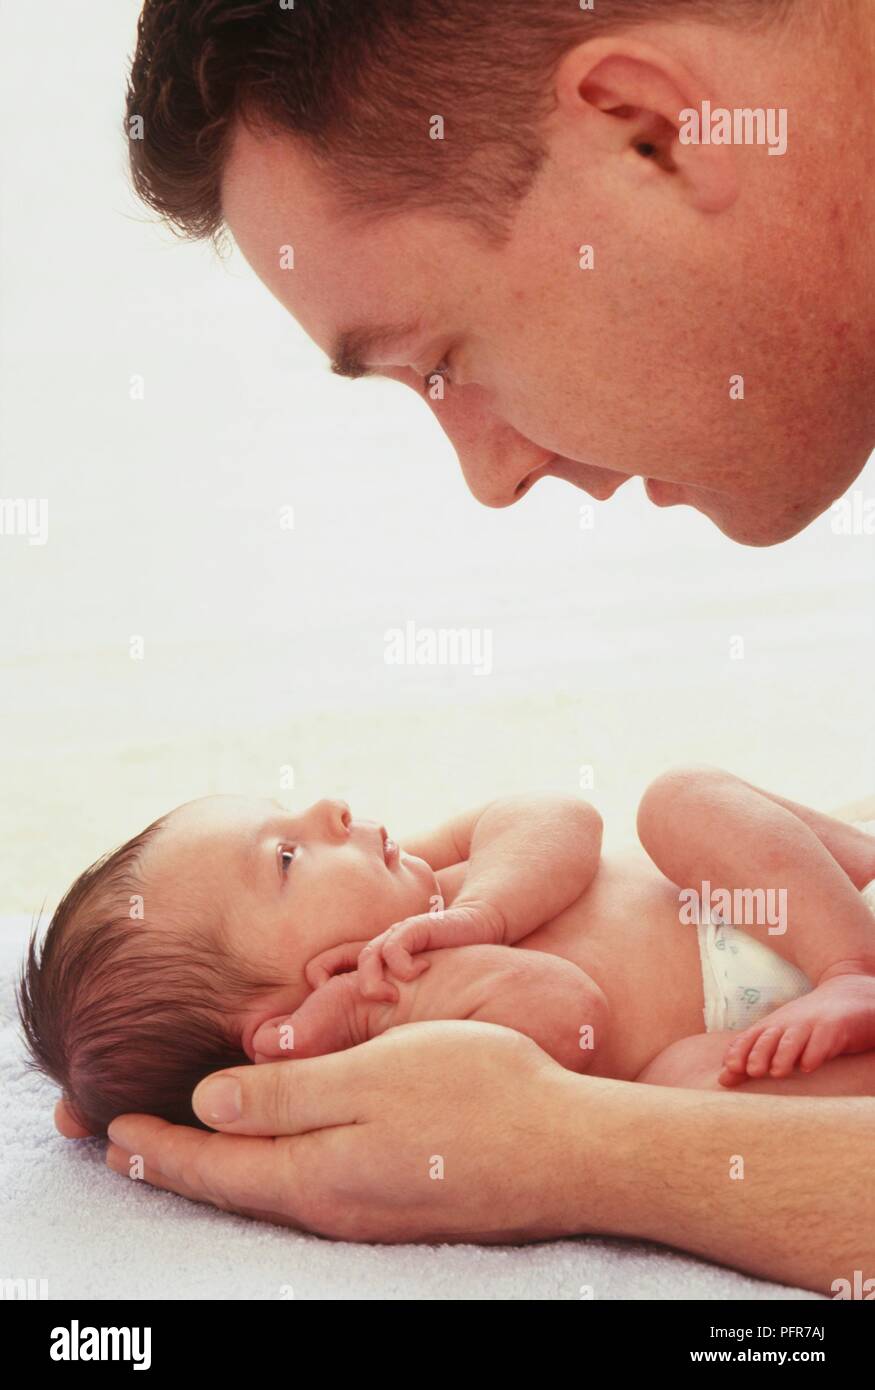 Uomo che guarda oltre il neonato ragazza distesa su un asciugamano close-up, vista laterale Foto Stock